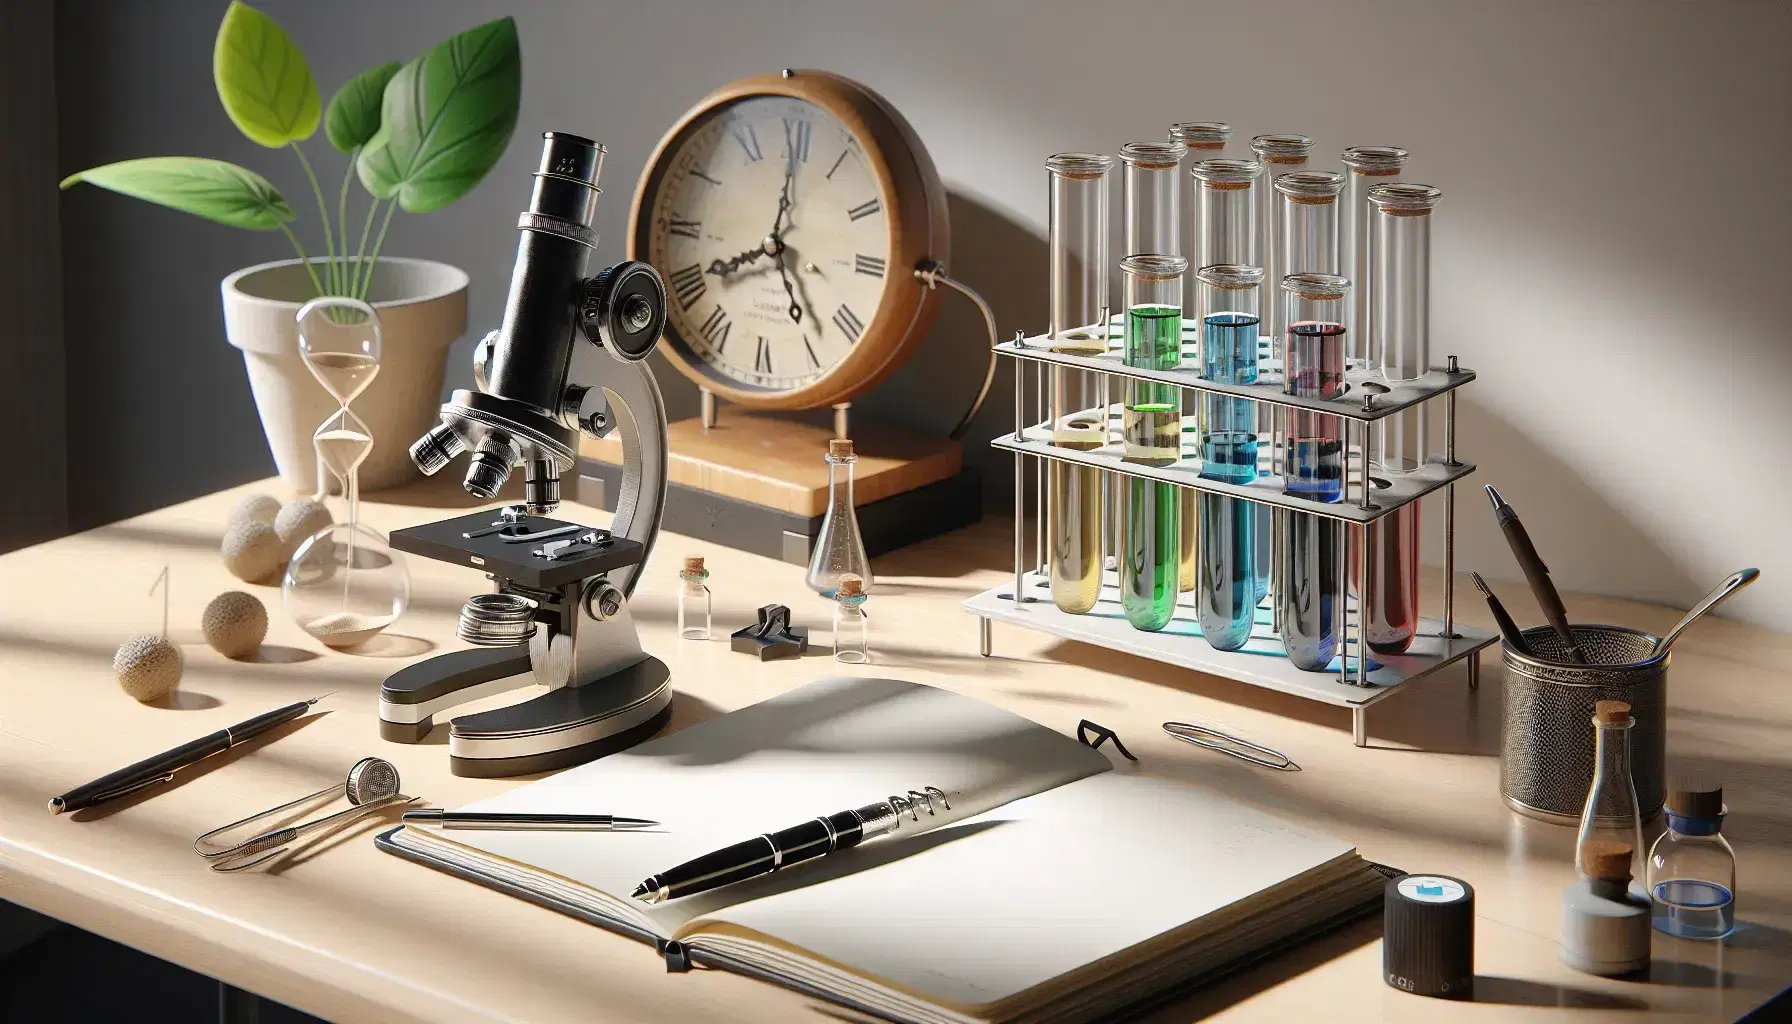 Mesa de trabajo de madera clara con microscopio negro y plateado, cuaderno abierto con pluma, tubos de ensayo con líquidos de colores y reloj de arena, junto a planta en maceta.